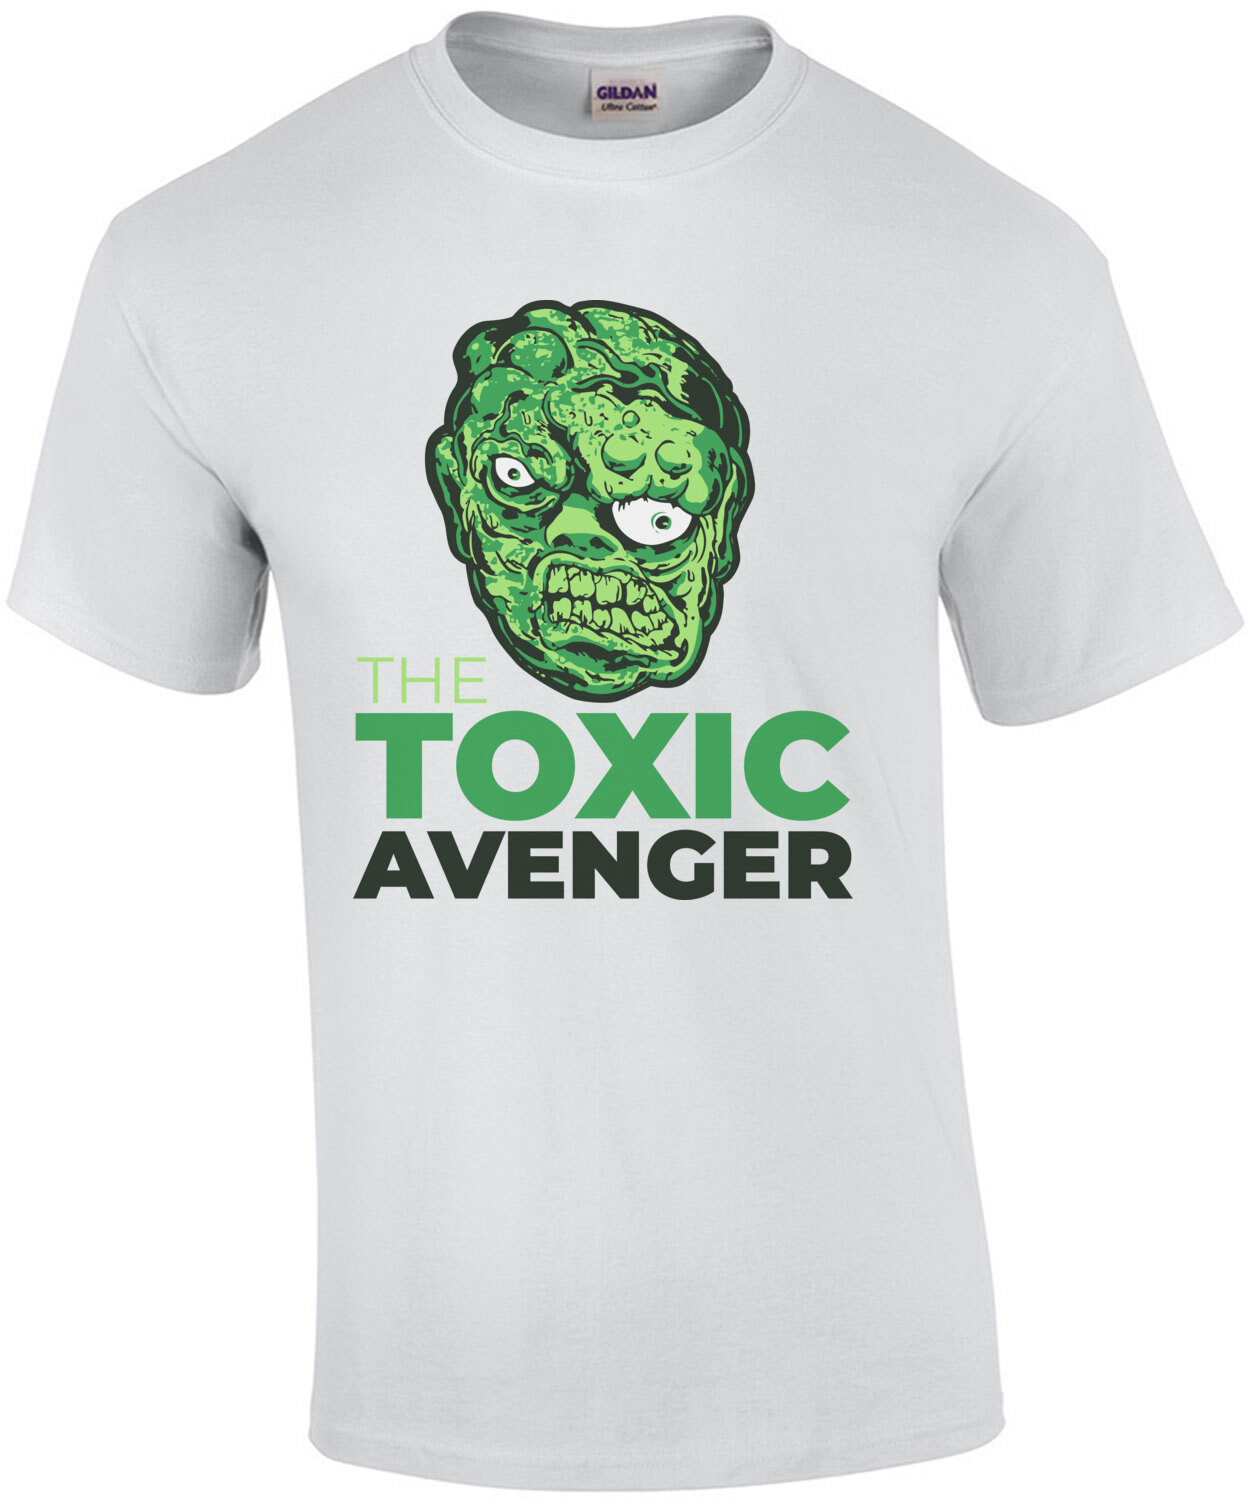 The Toxic Avenger - 80's T-Shirt